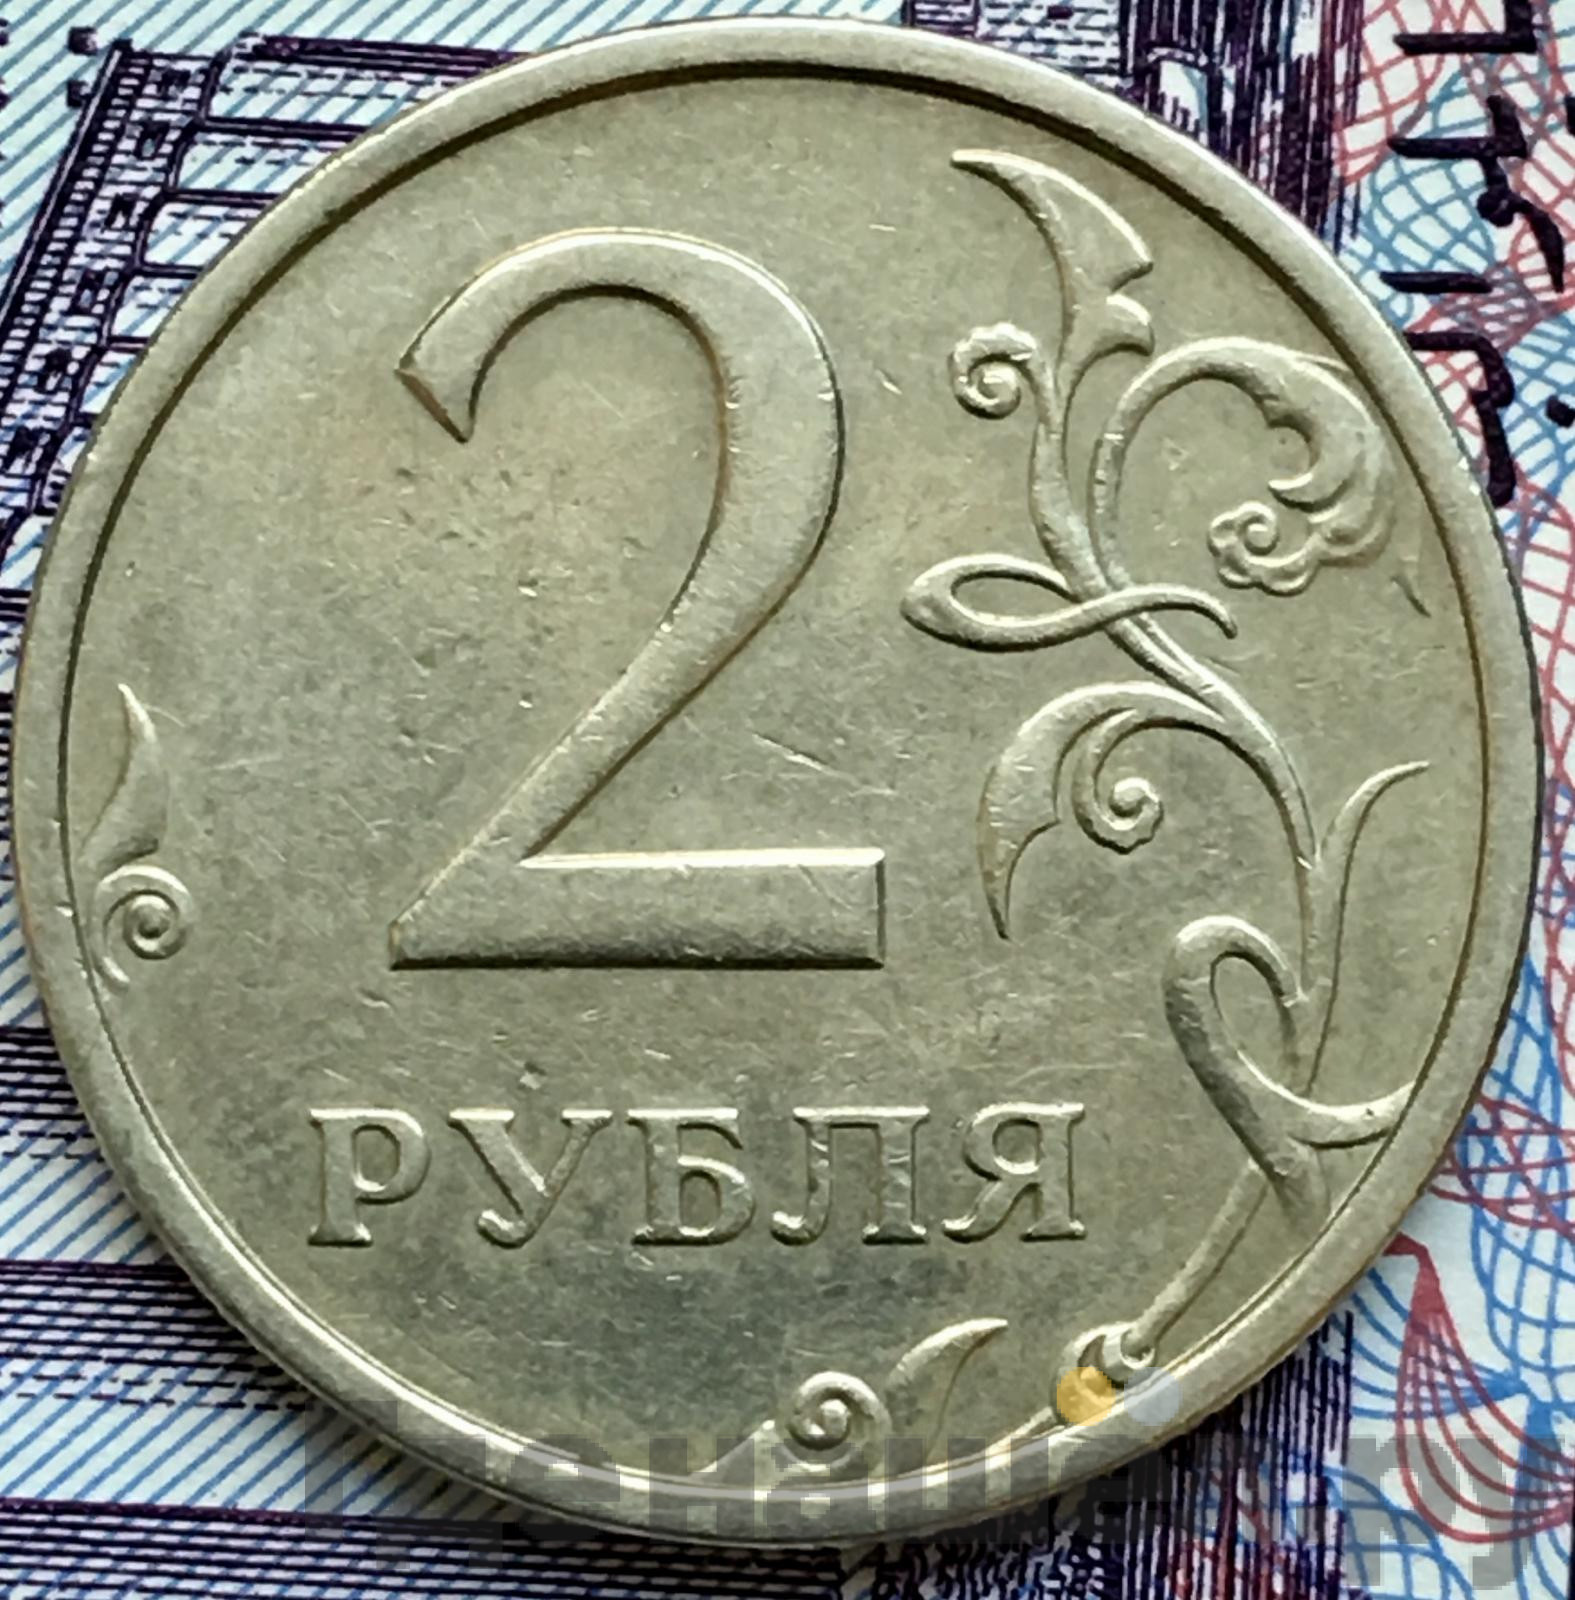 2 рубля 2003 года